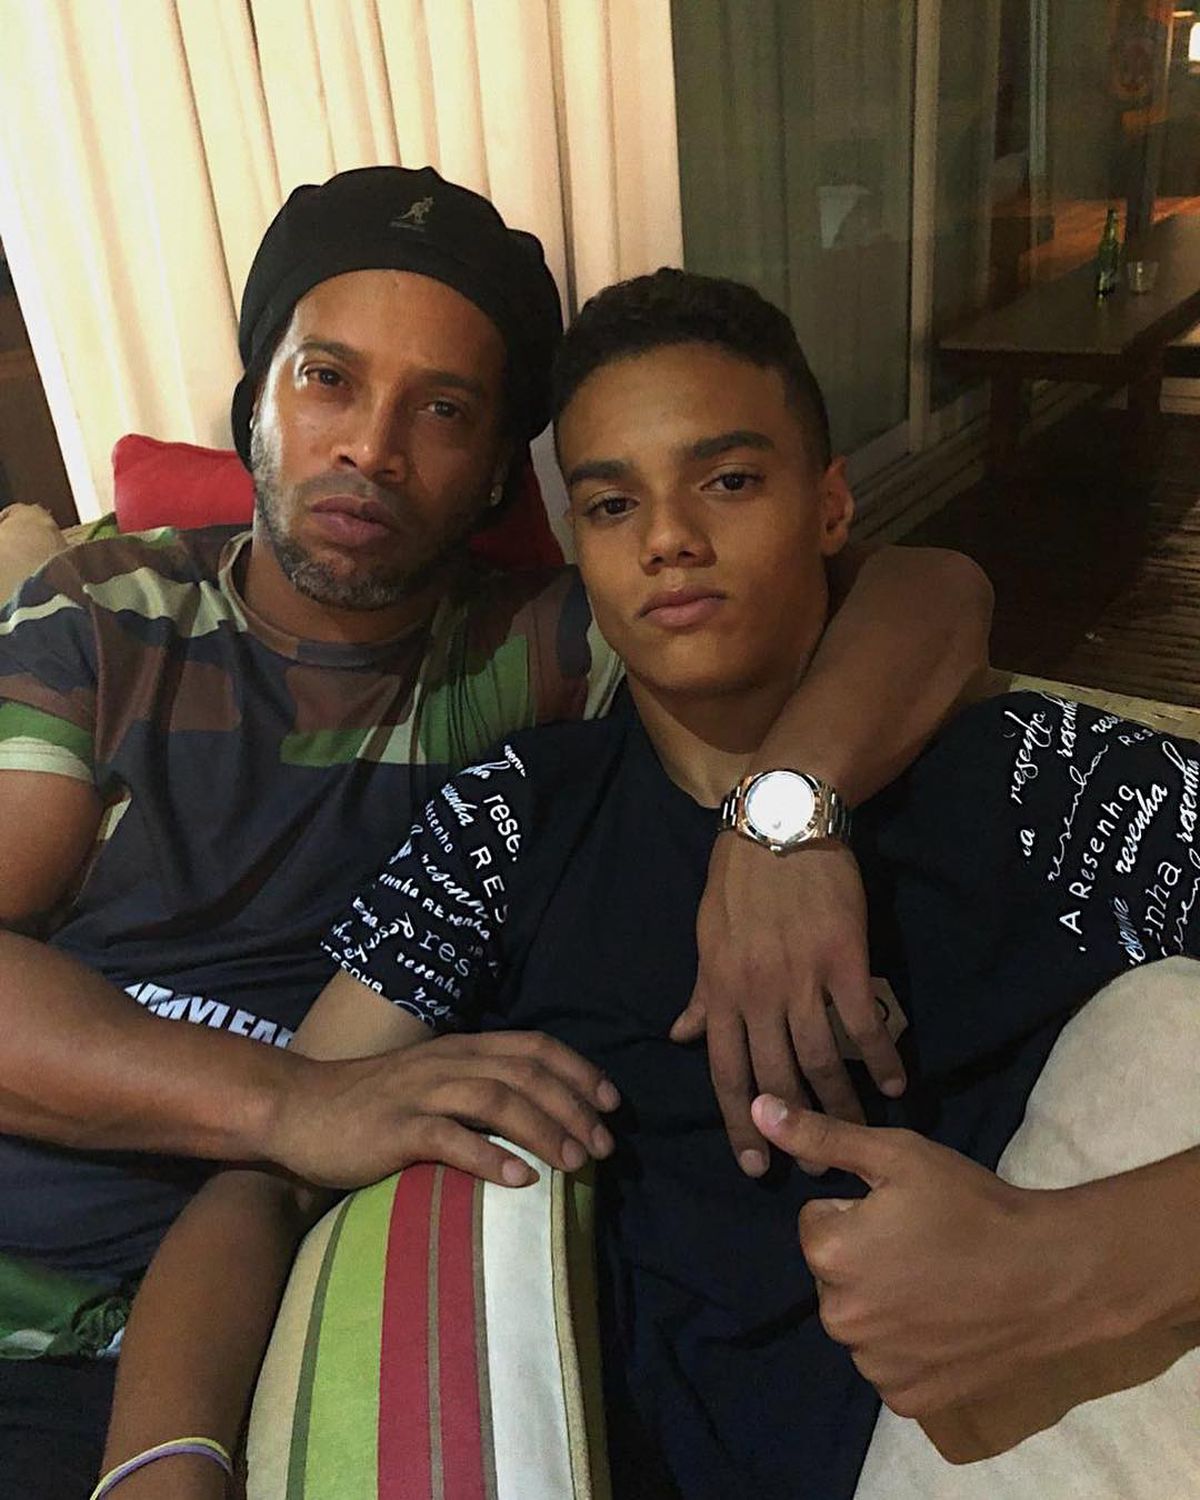 Joao Mendes de Assis Moreira, fiul lui Ronaldinho / FOTO: Instagram